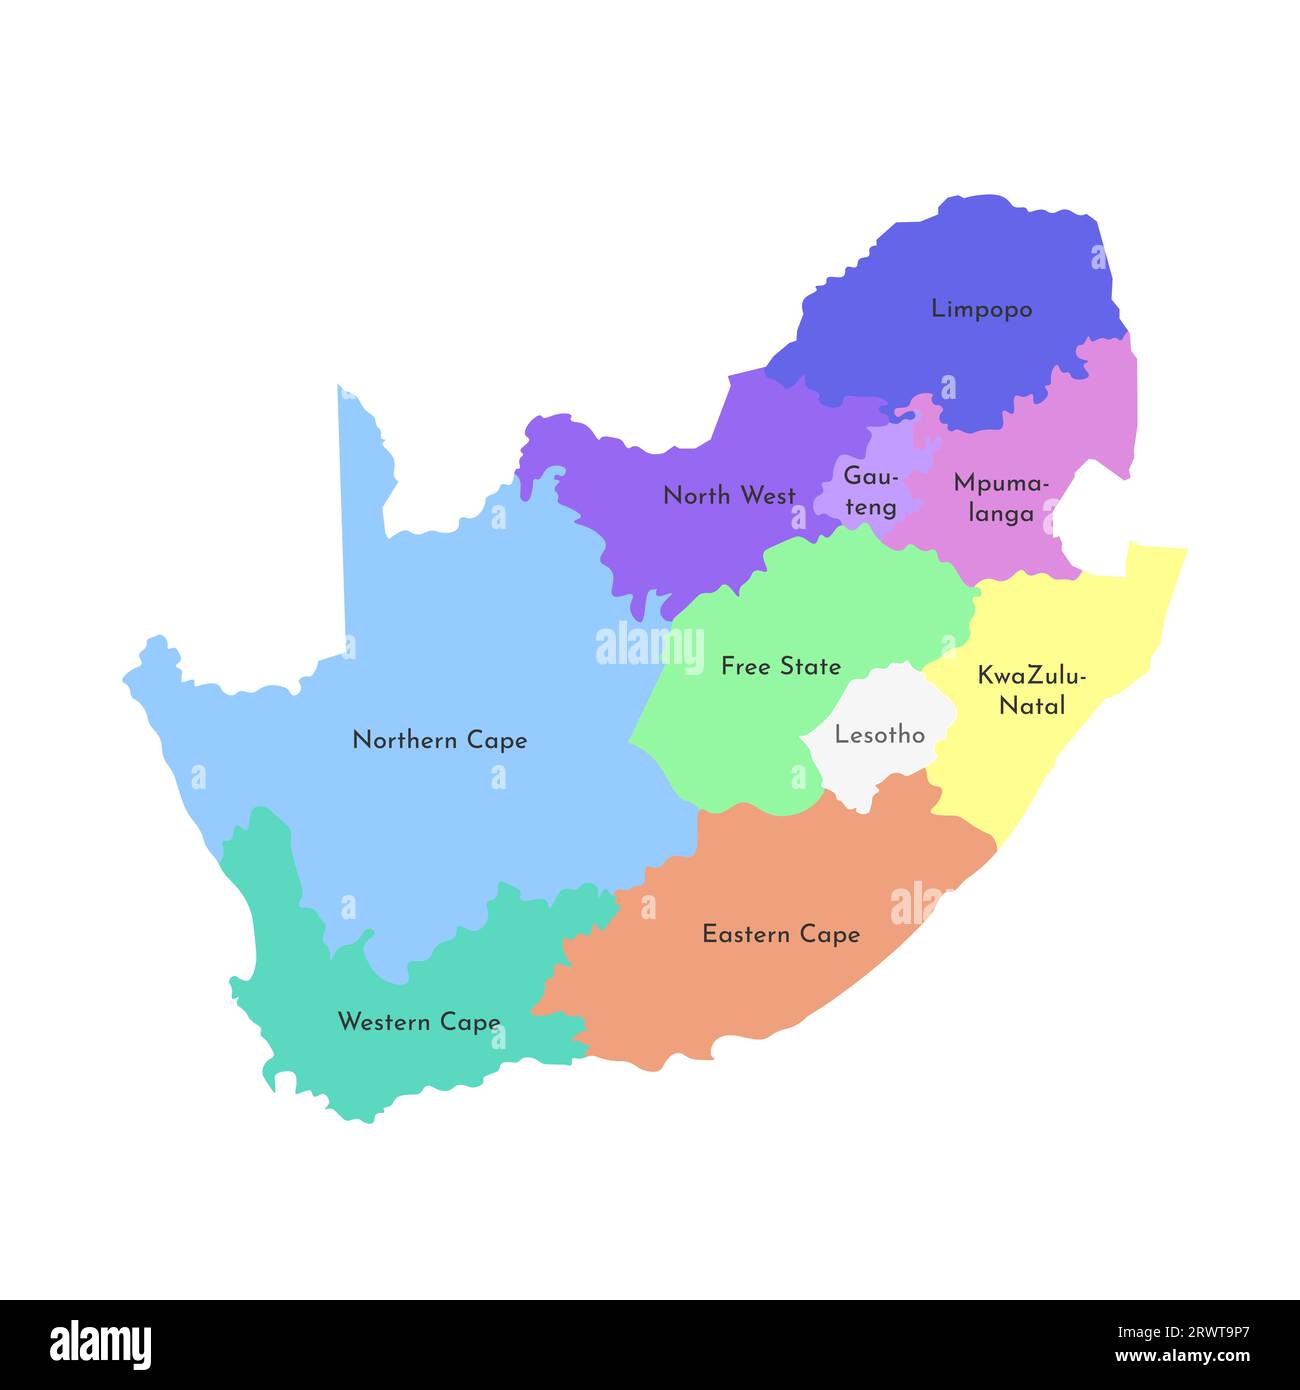 Illustrazione vettoriale isolata della mappa amministrativa semplificata del Sudafrica. Confini e nomi delle regioni. Silhouette multicolore Illustrazione Vettoriale